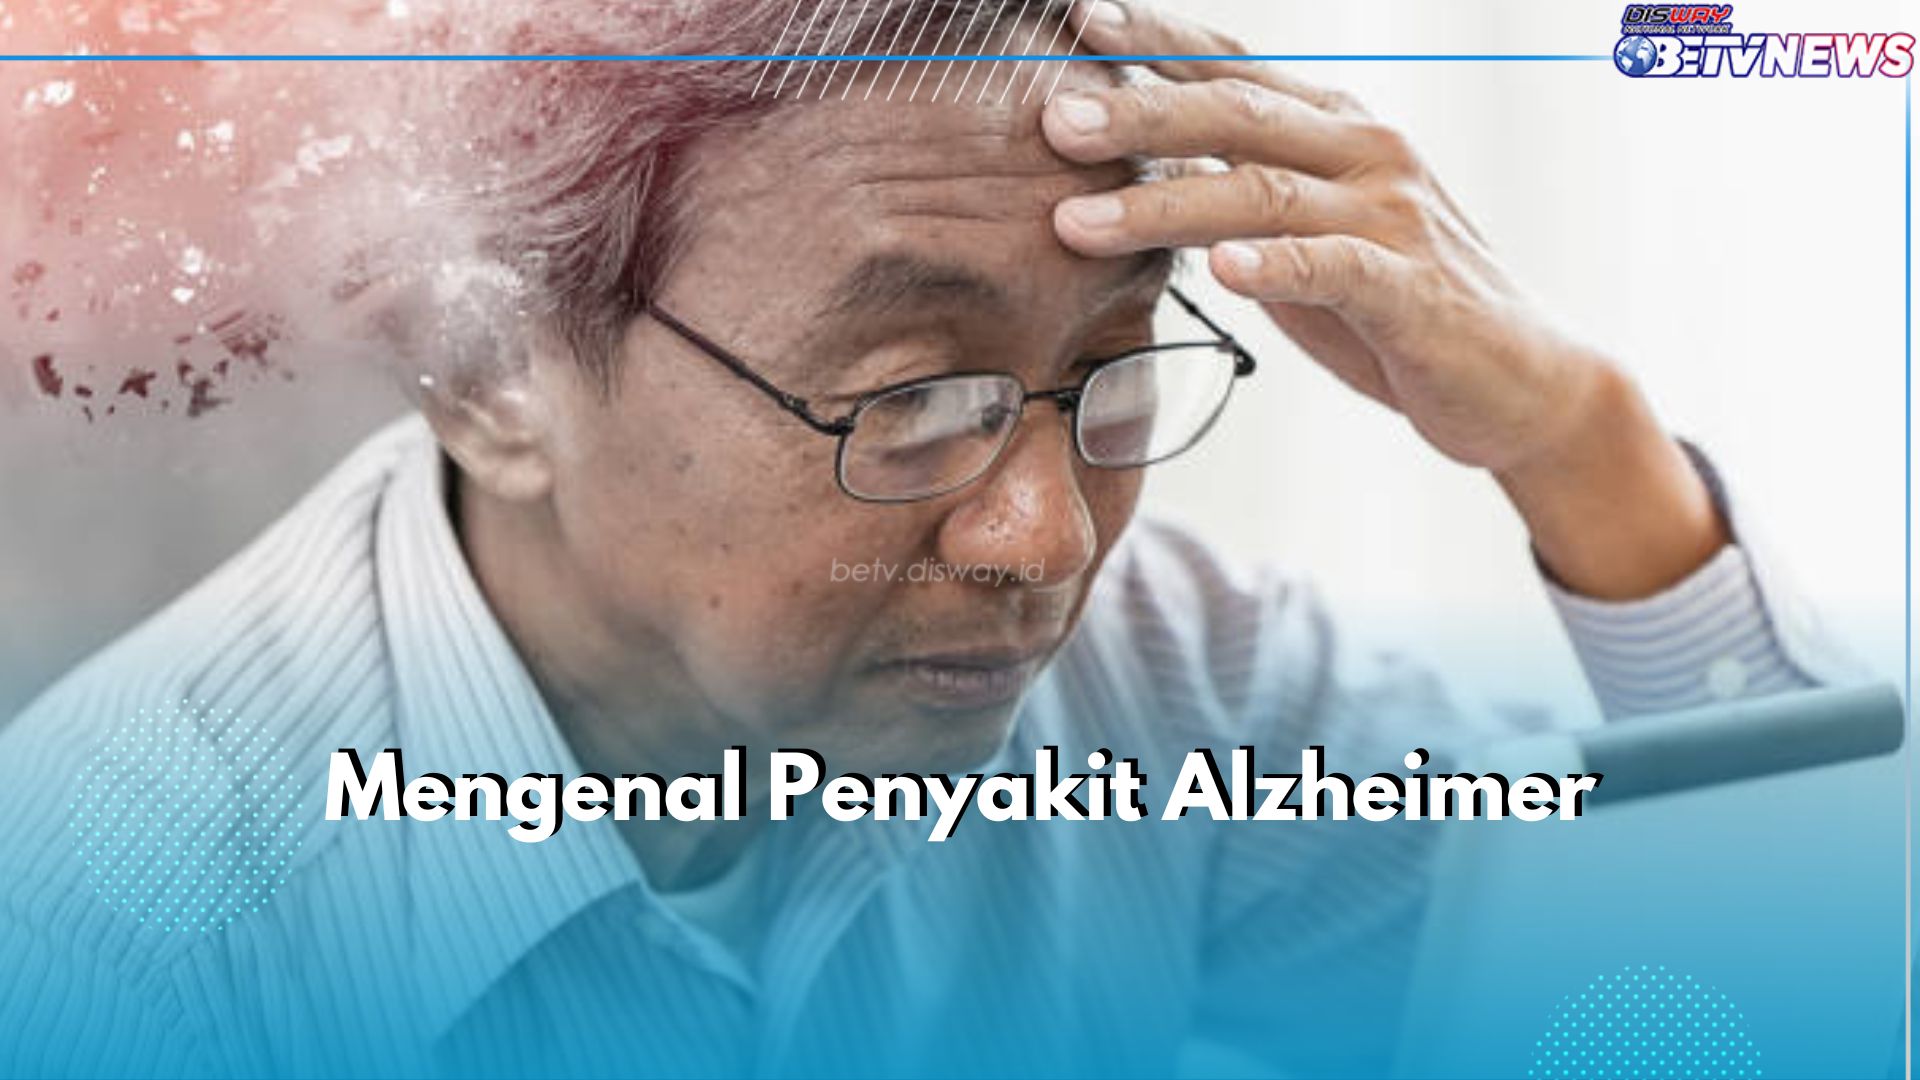 Mengenal Alzheimer, Penyakit Kronis yang Dapat Sebabkan Kelumpuhan Otak, Apa Itu?